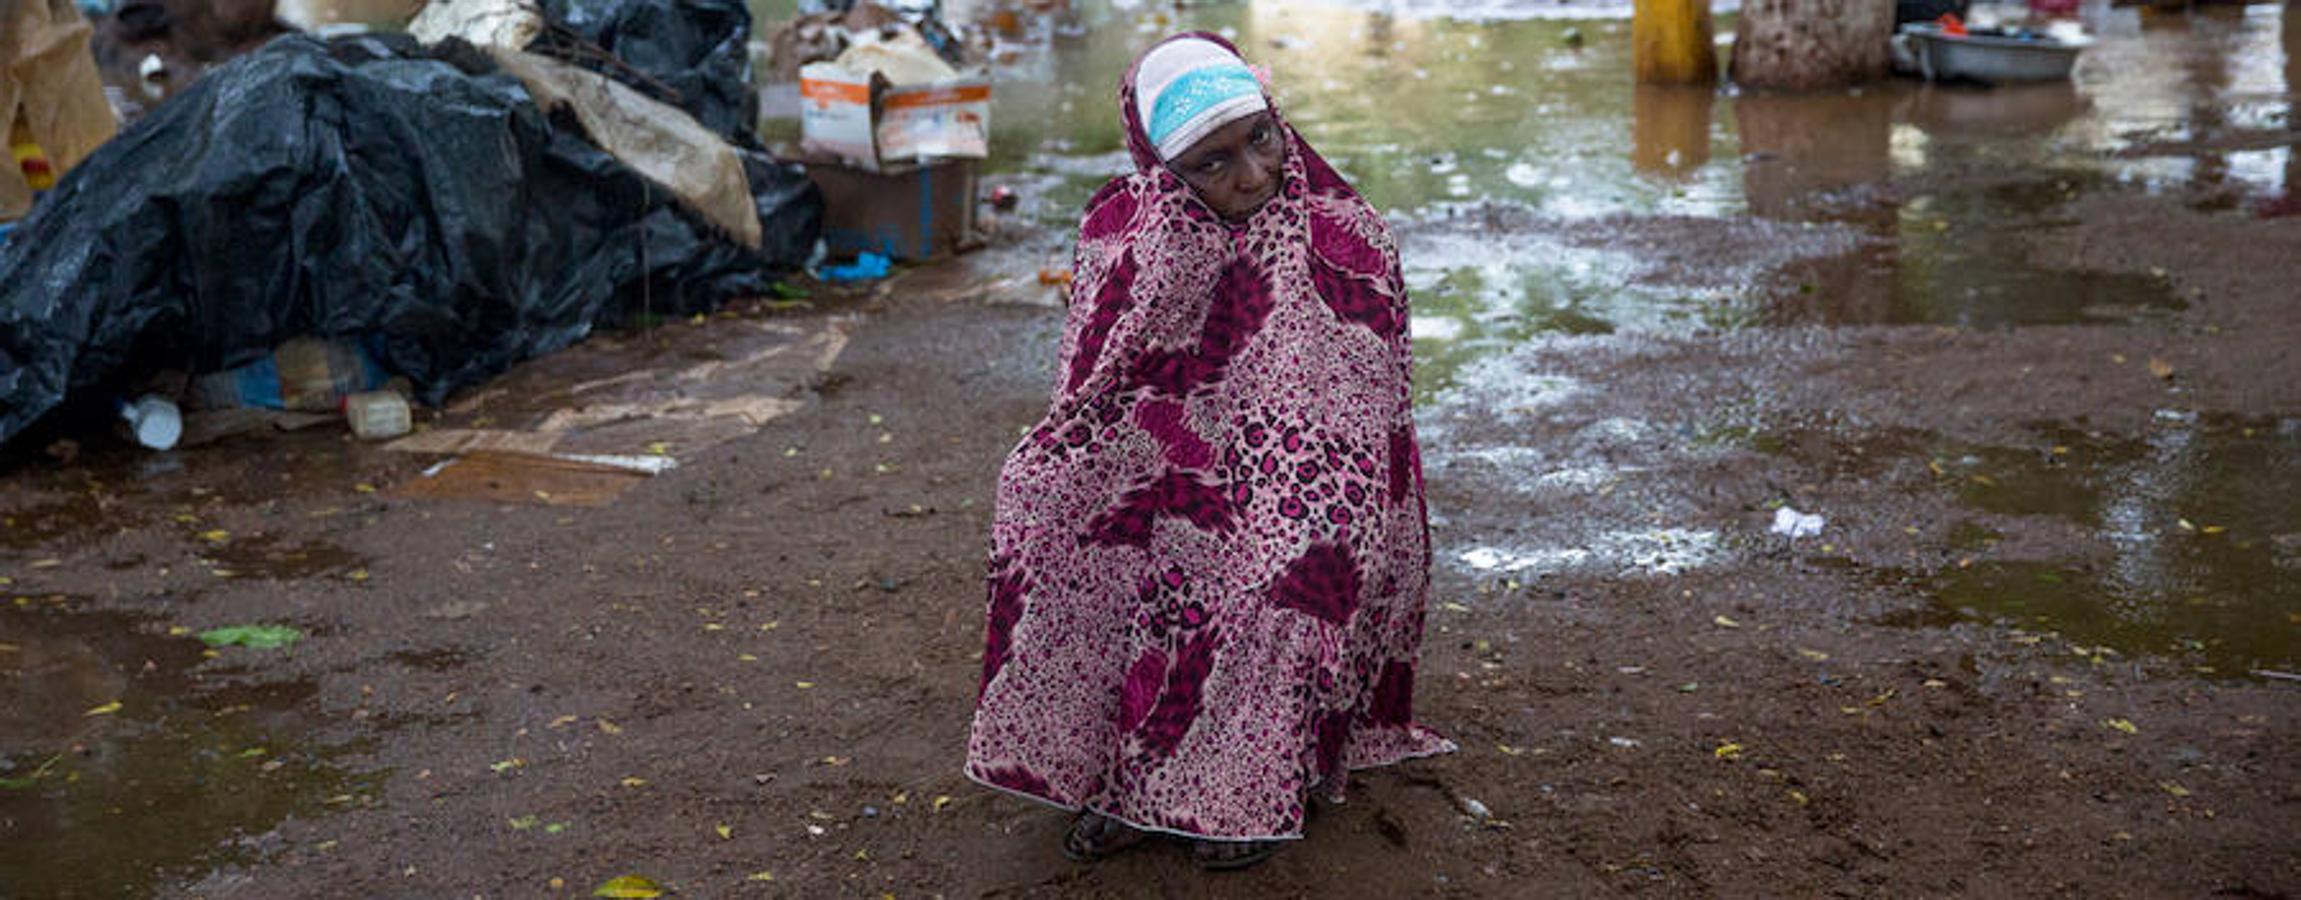 Esta mujer es una de las musulmanas desplazadas que buscaron refugio en el patio de la mezquita del enclave PK5 en Bangui. Durante la temporada de lluvias, la zona queda anegada y el agua entra en las tiendas de los desplazados. Quienes intentan salir del barrio son atacados por las milicias antibalakas.